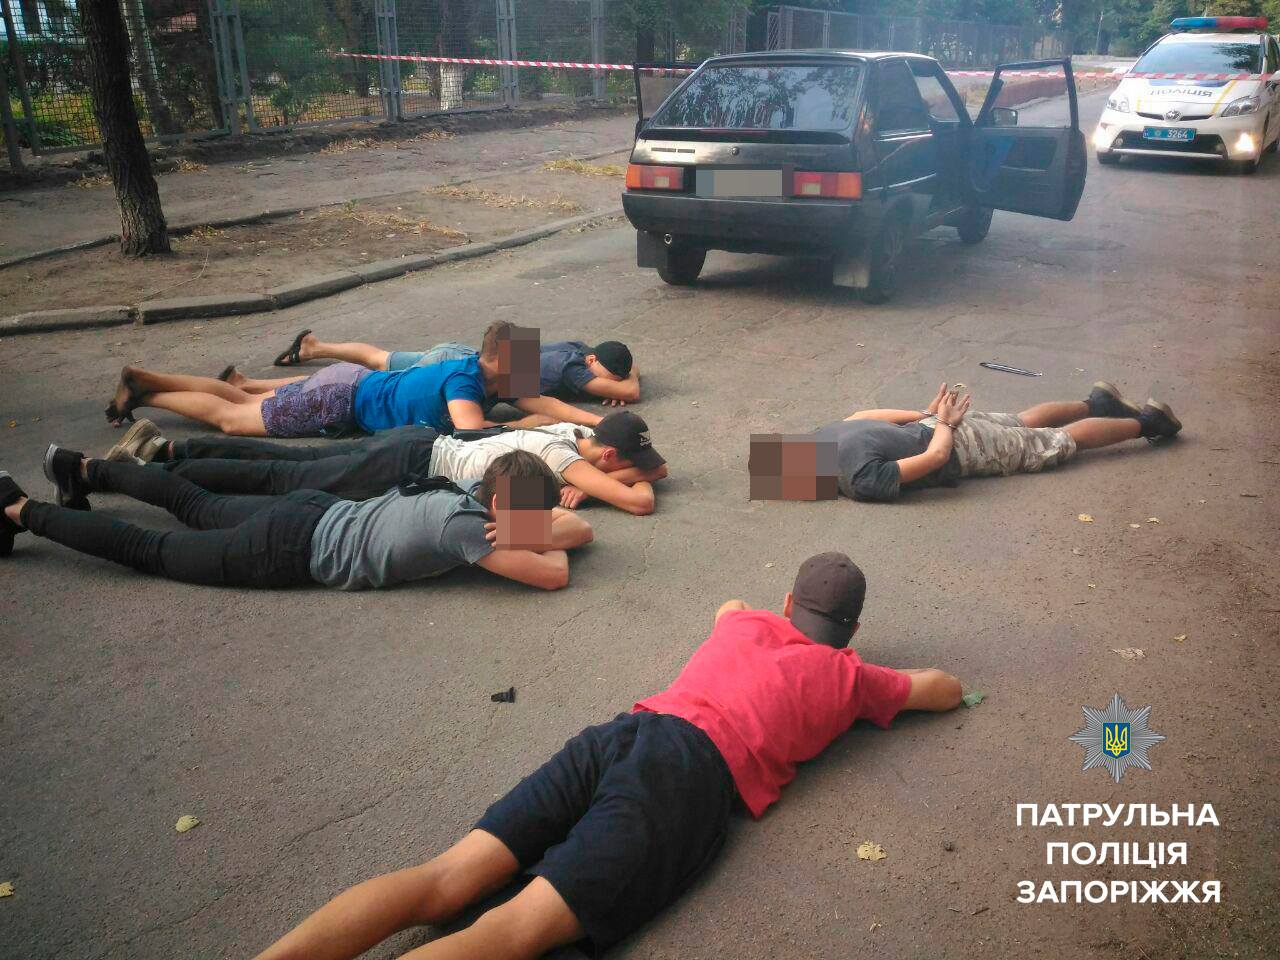 Новость - События - Шестеро на одного: группа парней ограбила запорожского заводчанина